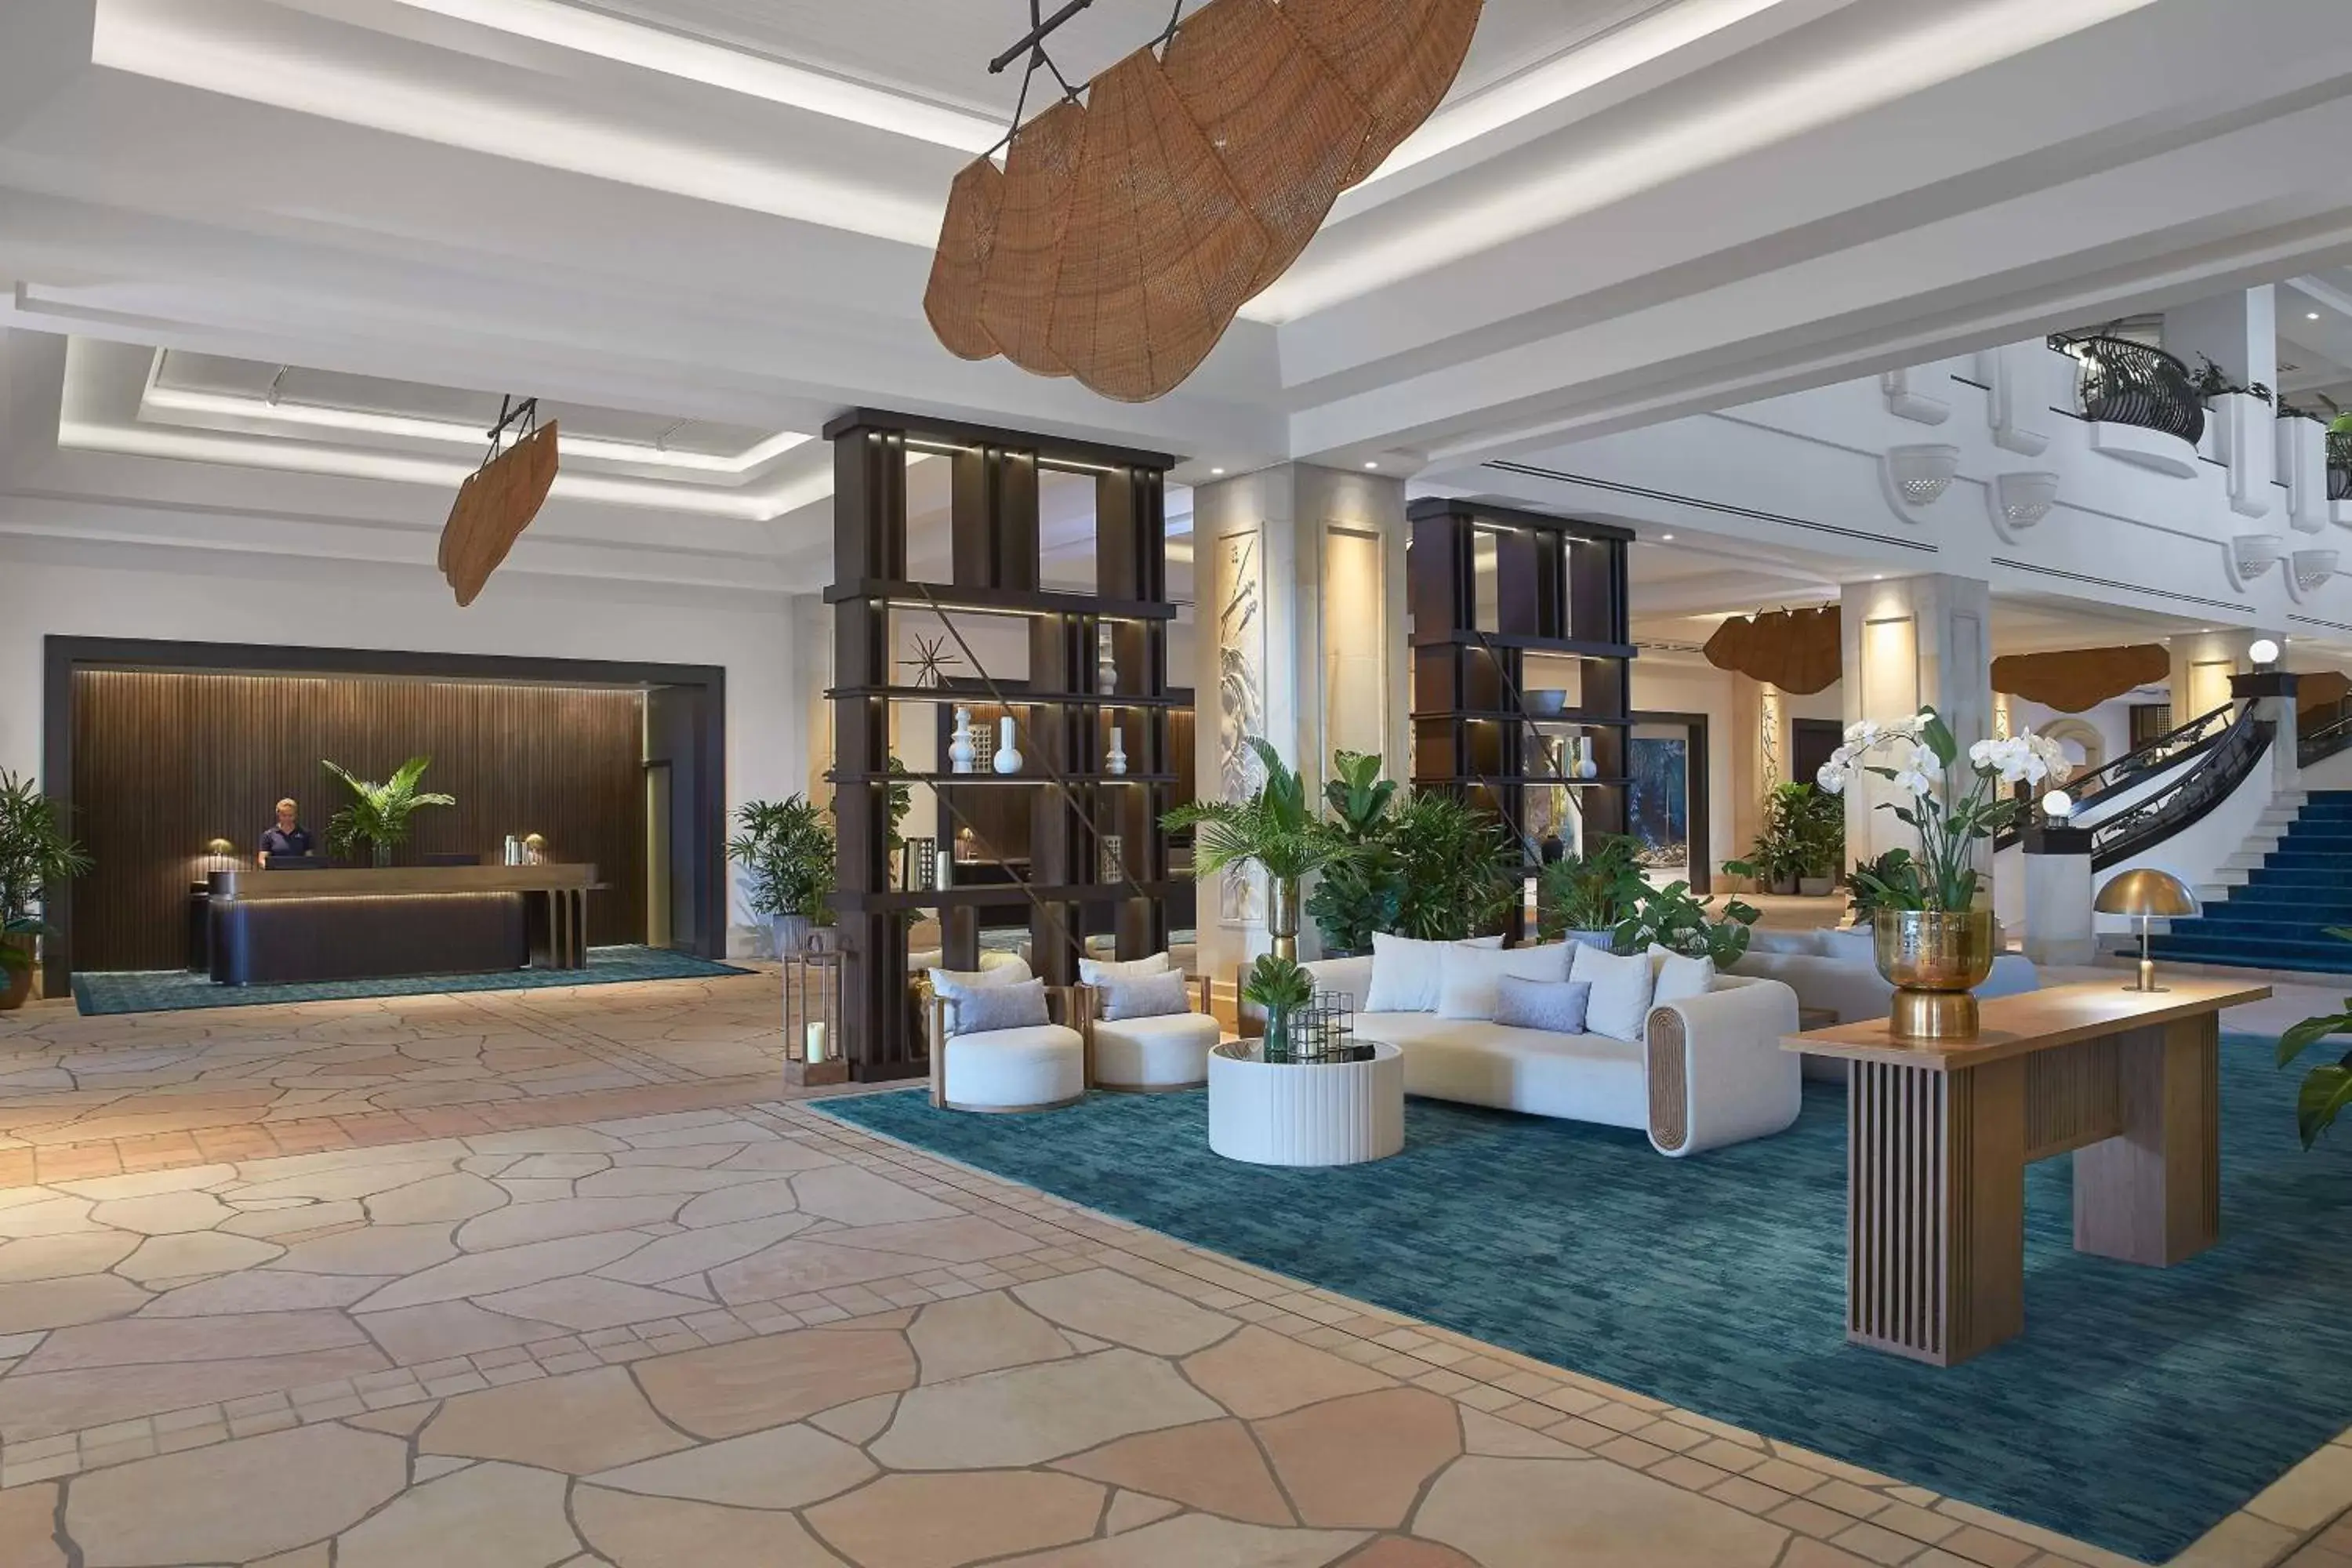 Lobby or reception in JW Marriott Gold Coast Resort & Spa